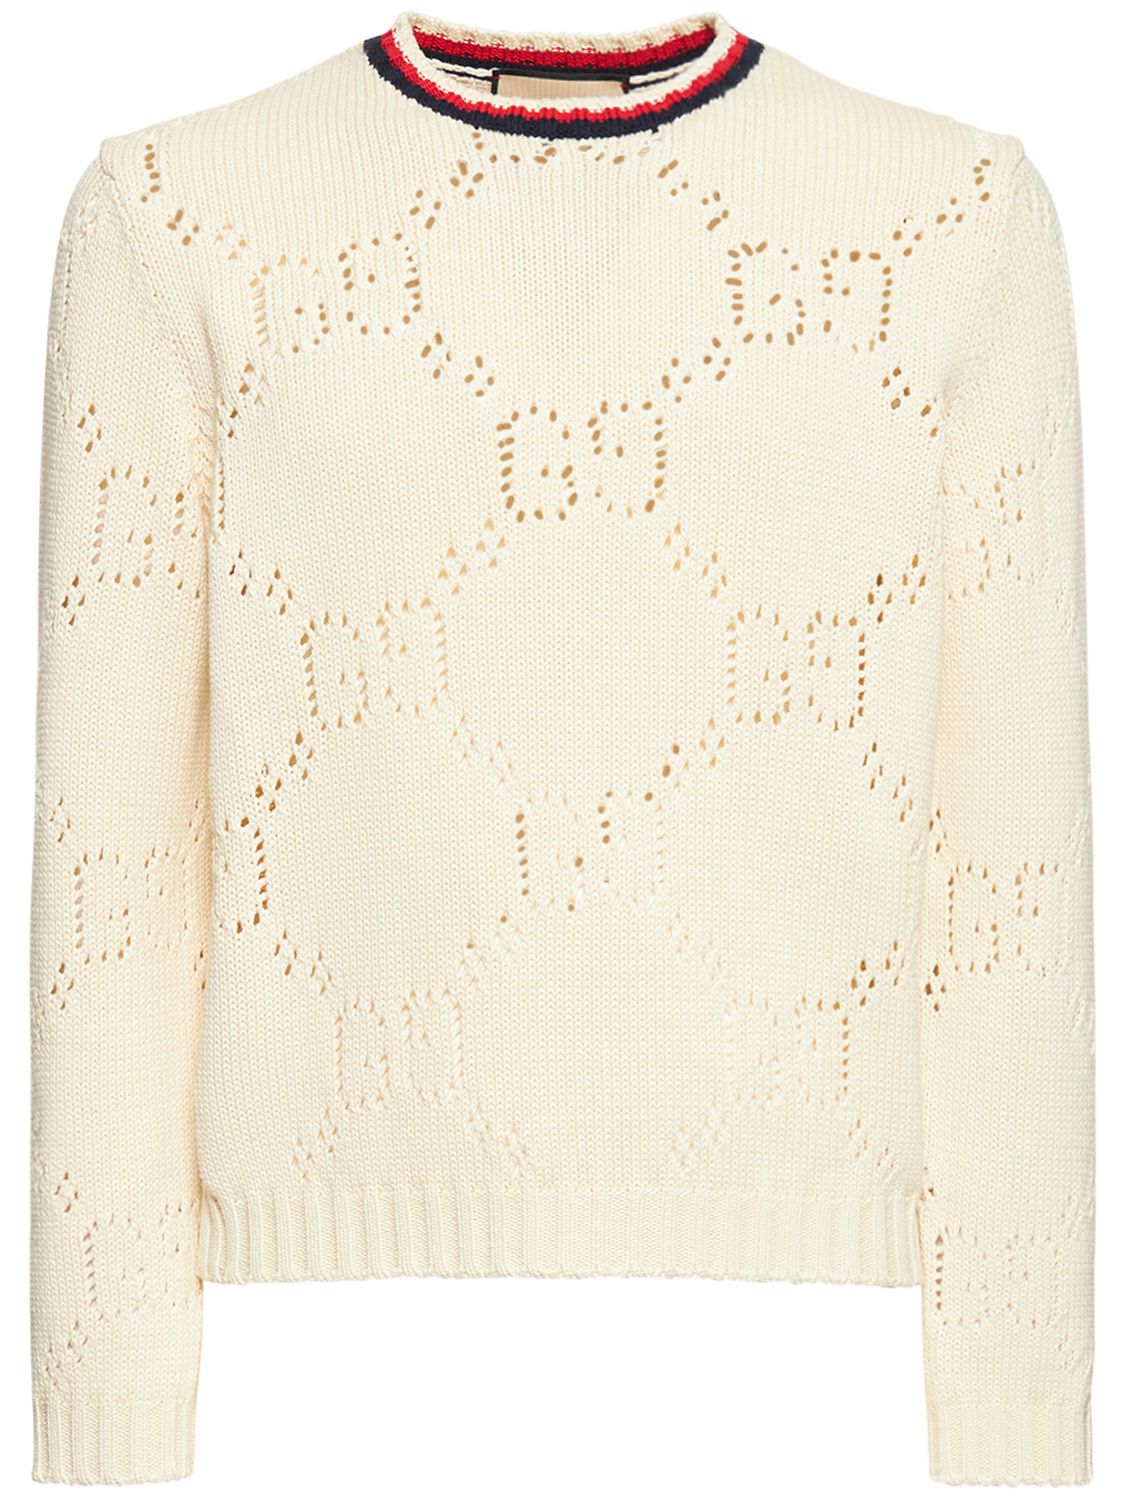 Perforated Gg Cotton Sweater - GUCCI - Modalova